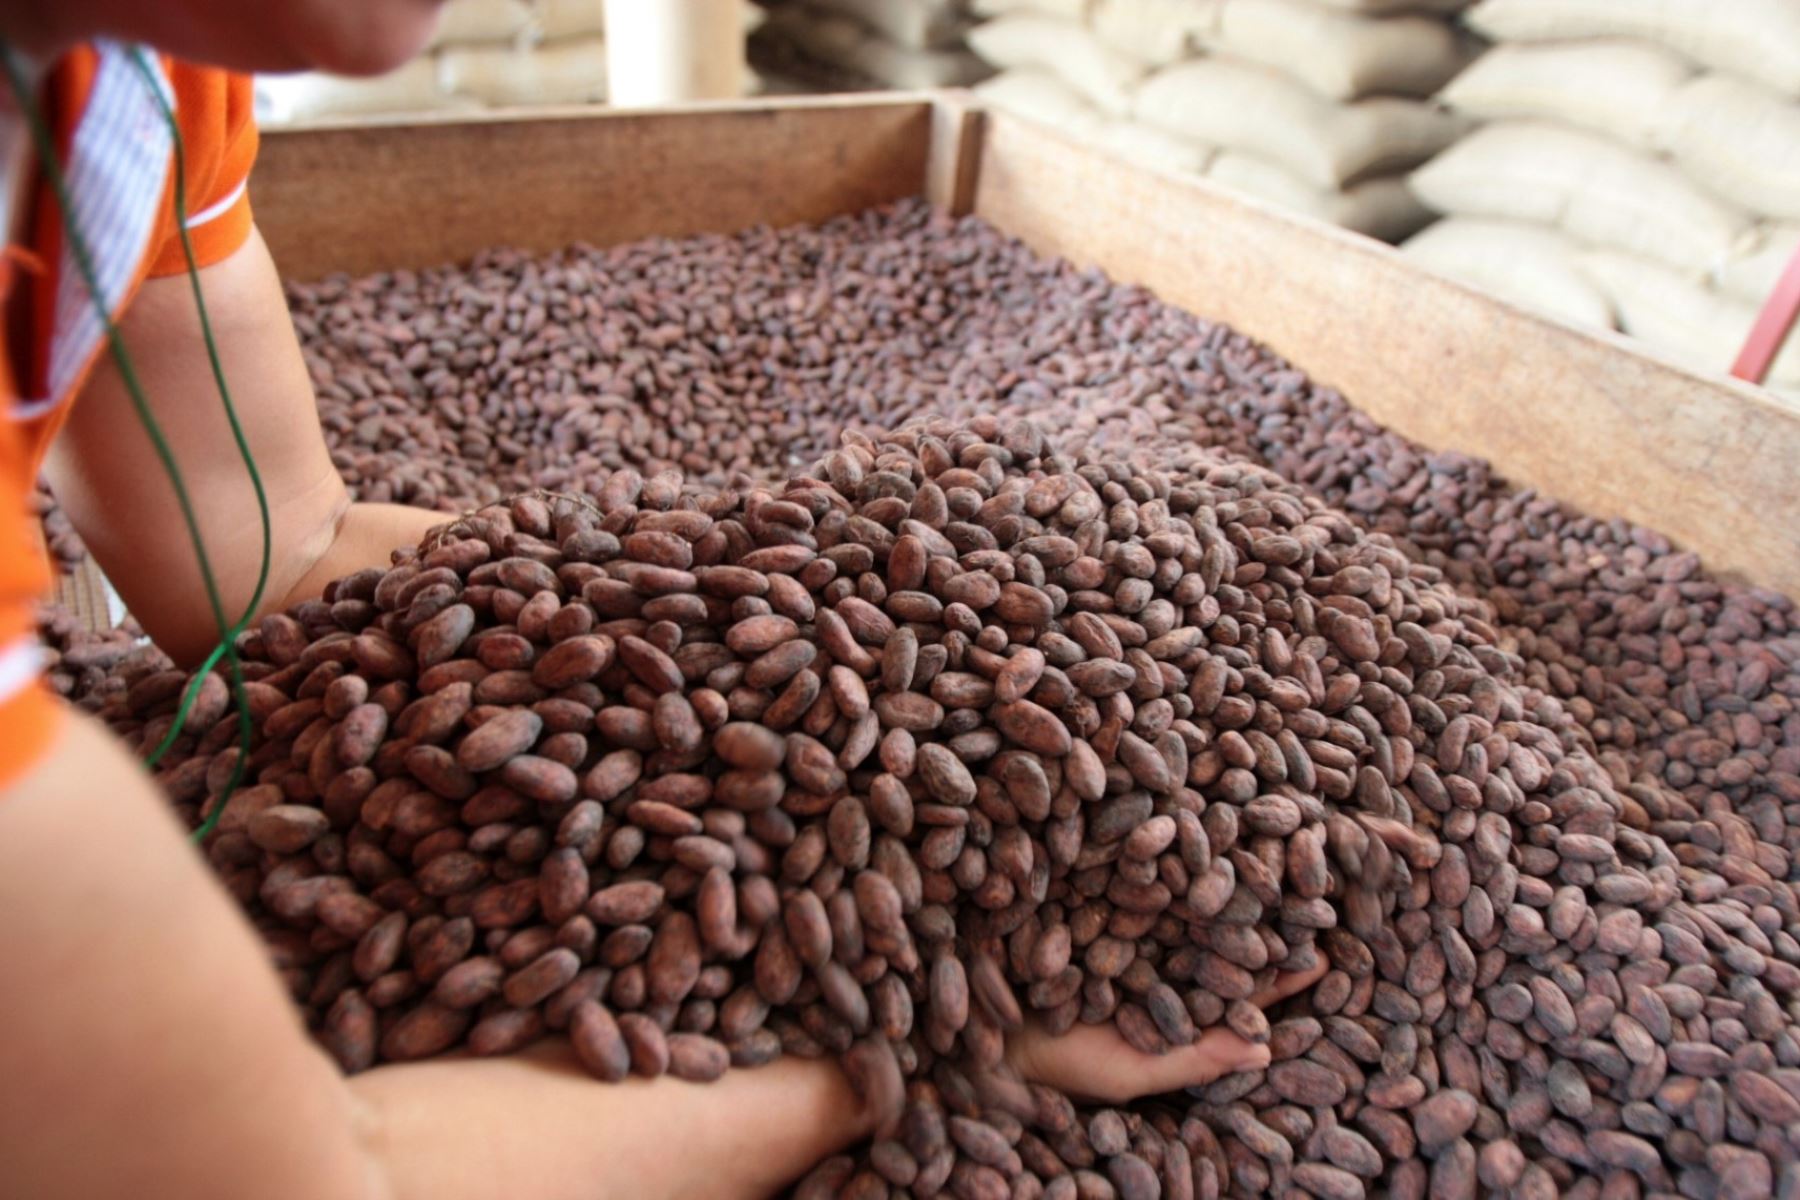 Centro de acopio de cacao operará en San Martín. ANDINA/archivo